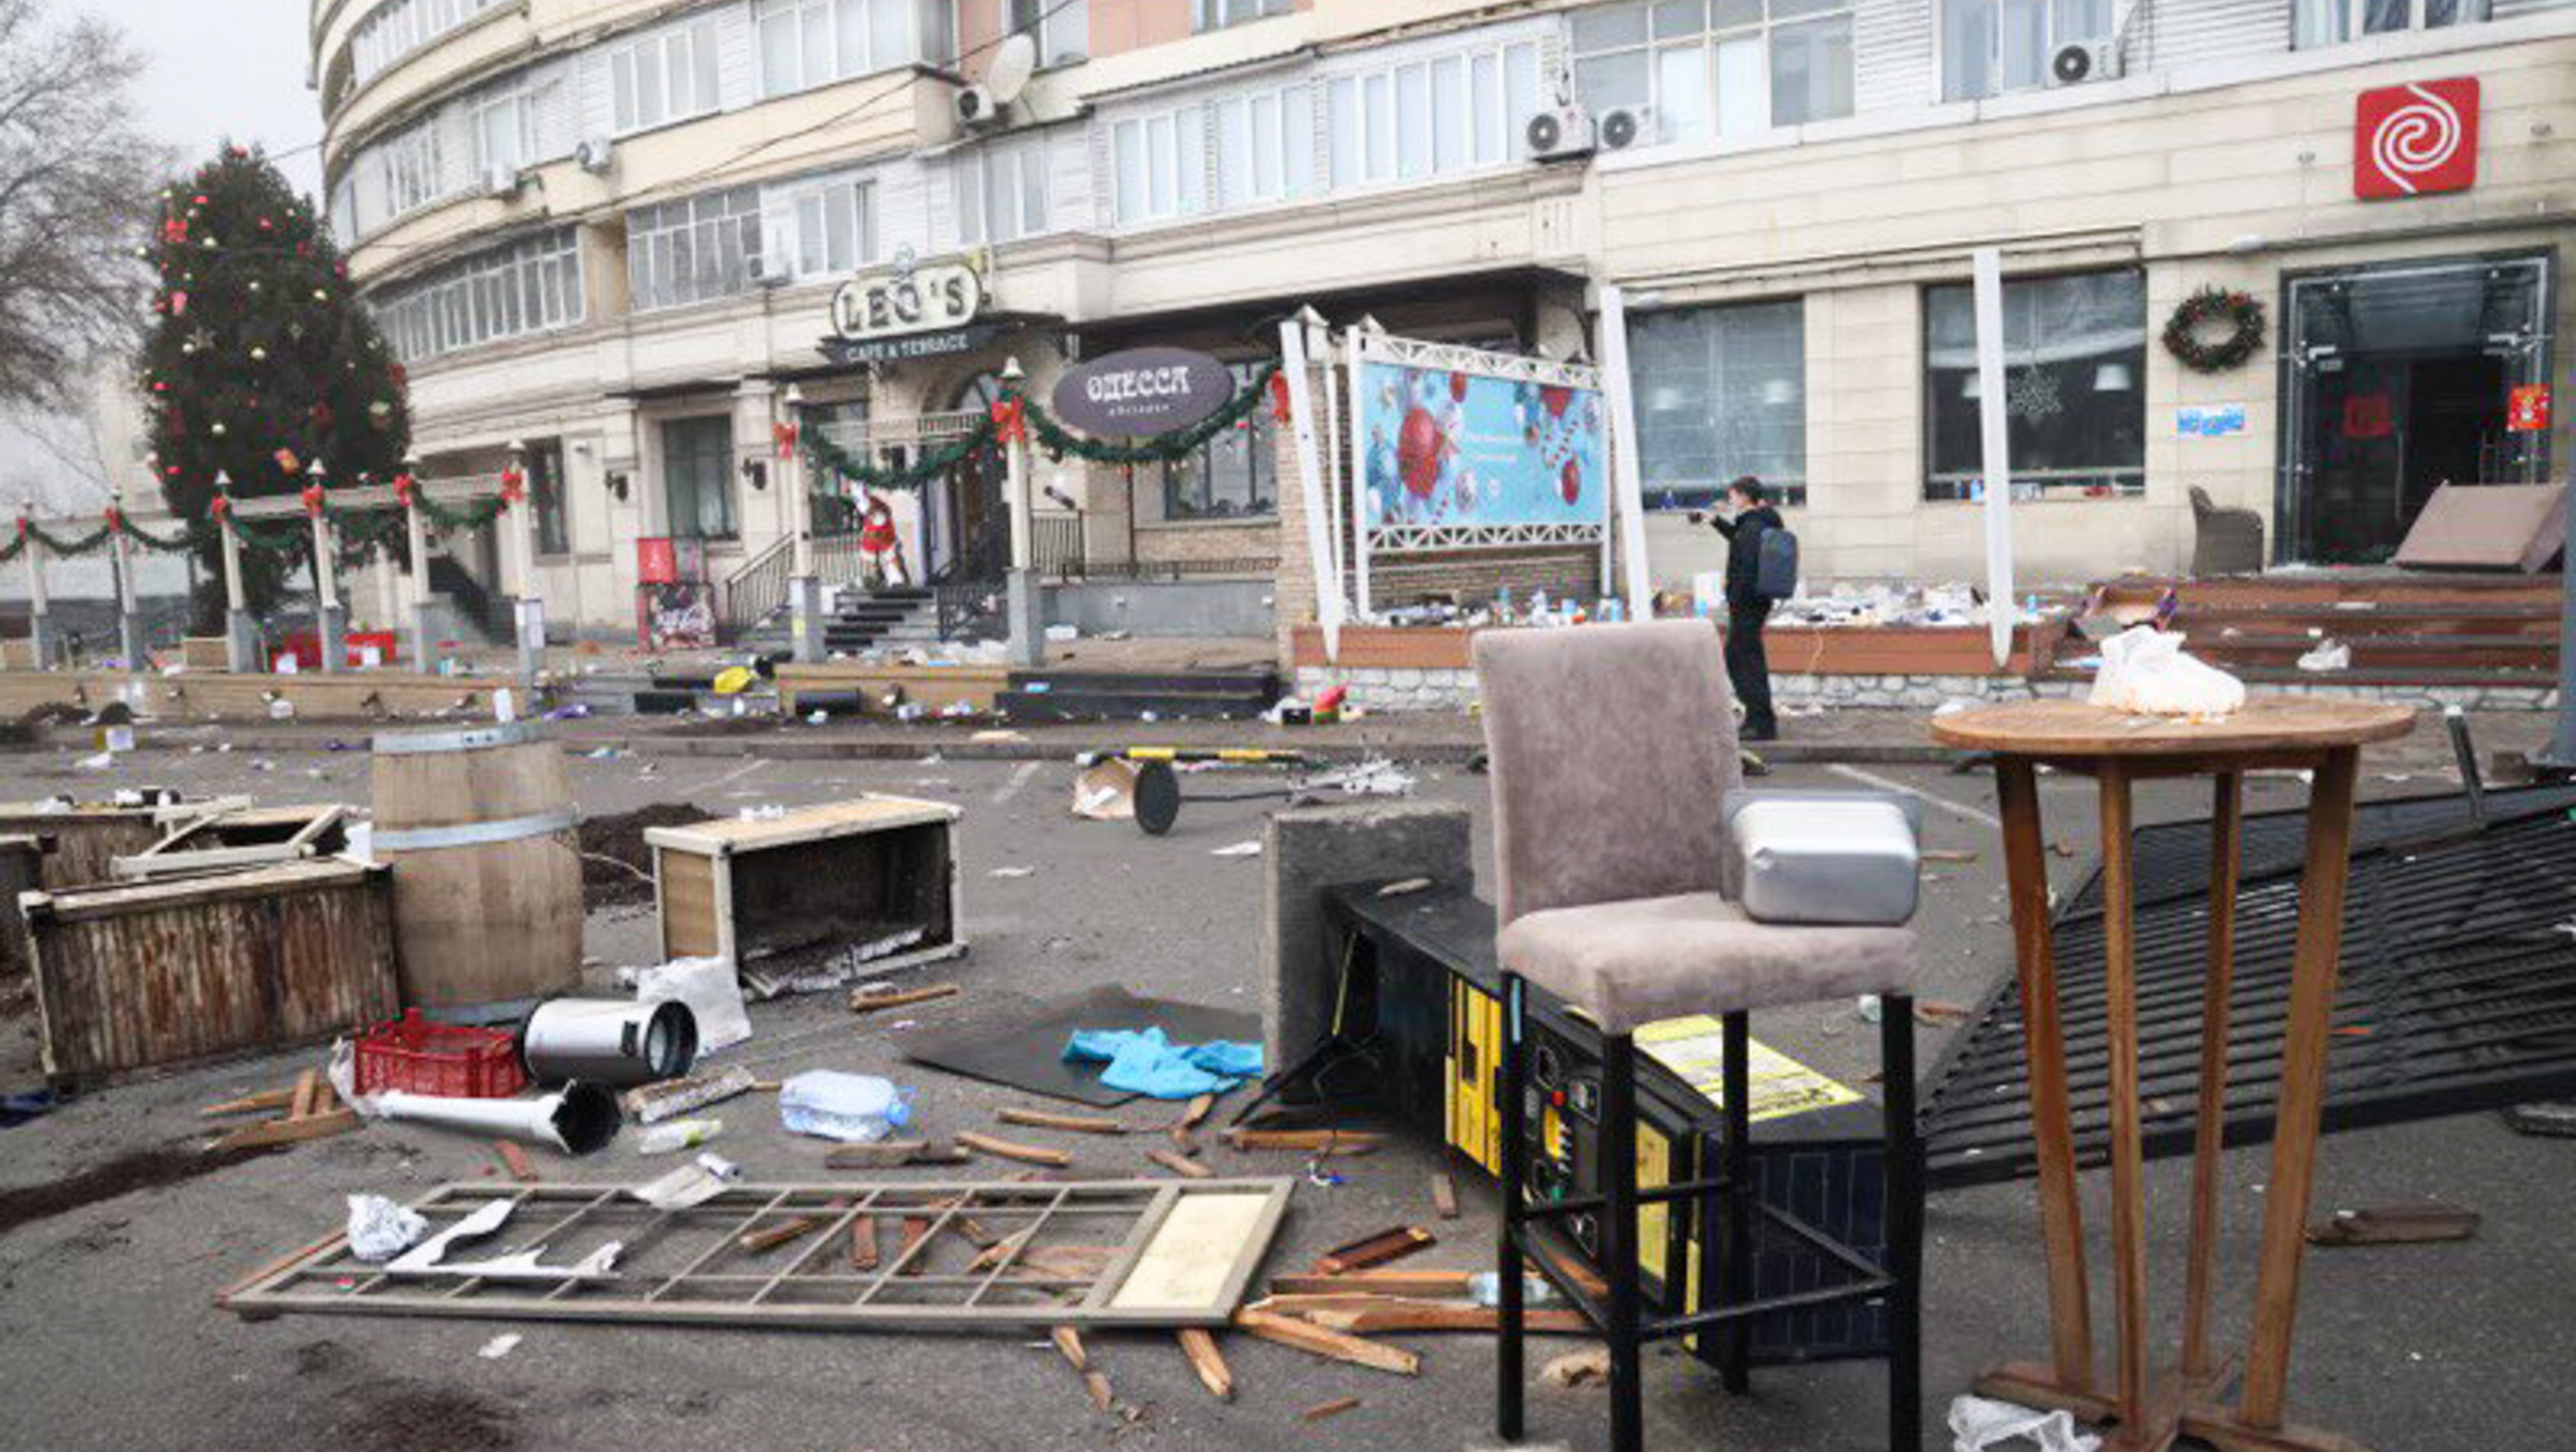 Damage from unrest in Almaty, Kazakhstan